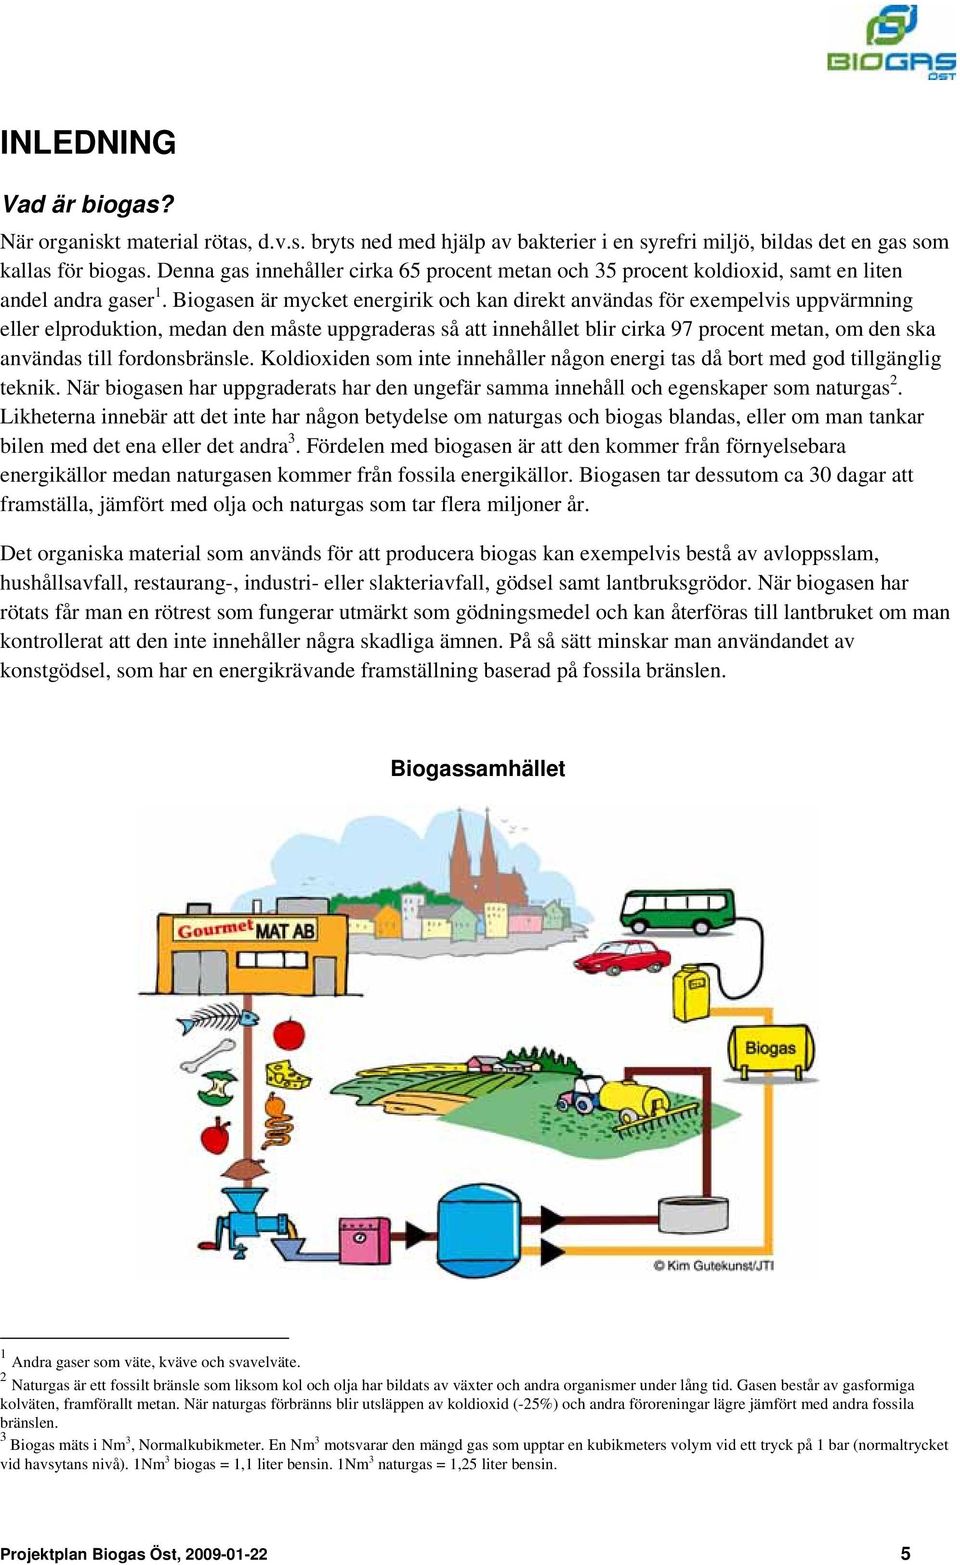 Biogasen är mycket energirik och kan direkt användas för exempelvis uppvärmning eller elproduktion, medan den måste uppgraderas så att innehållet blir cirka 97 procent metan, om den ska användas till